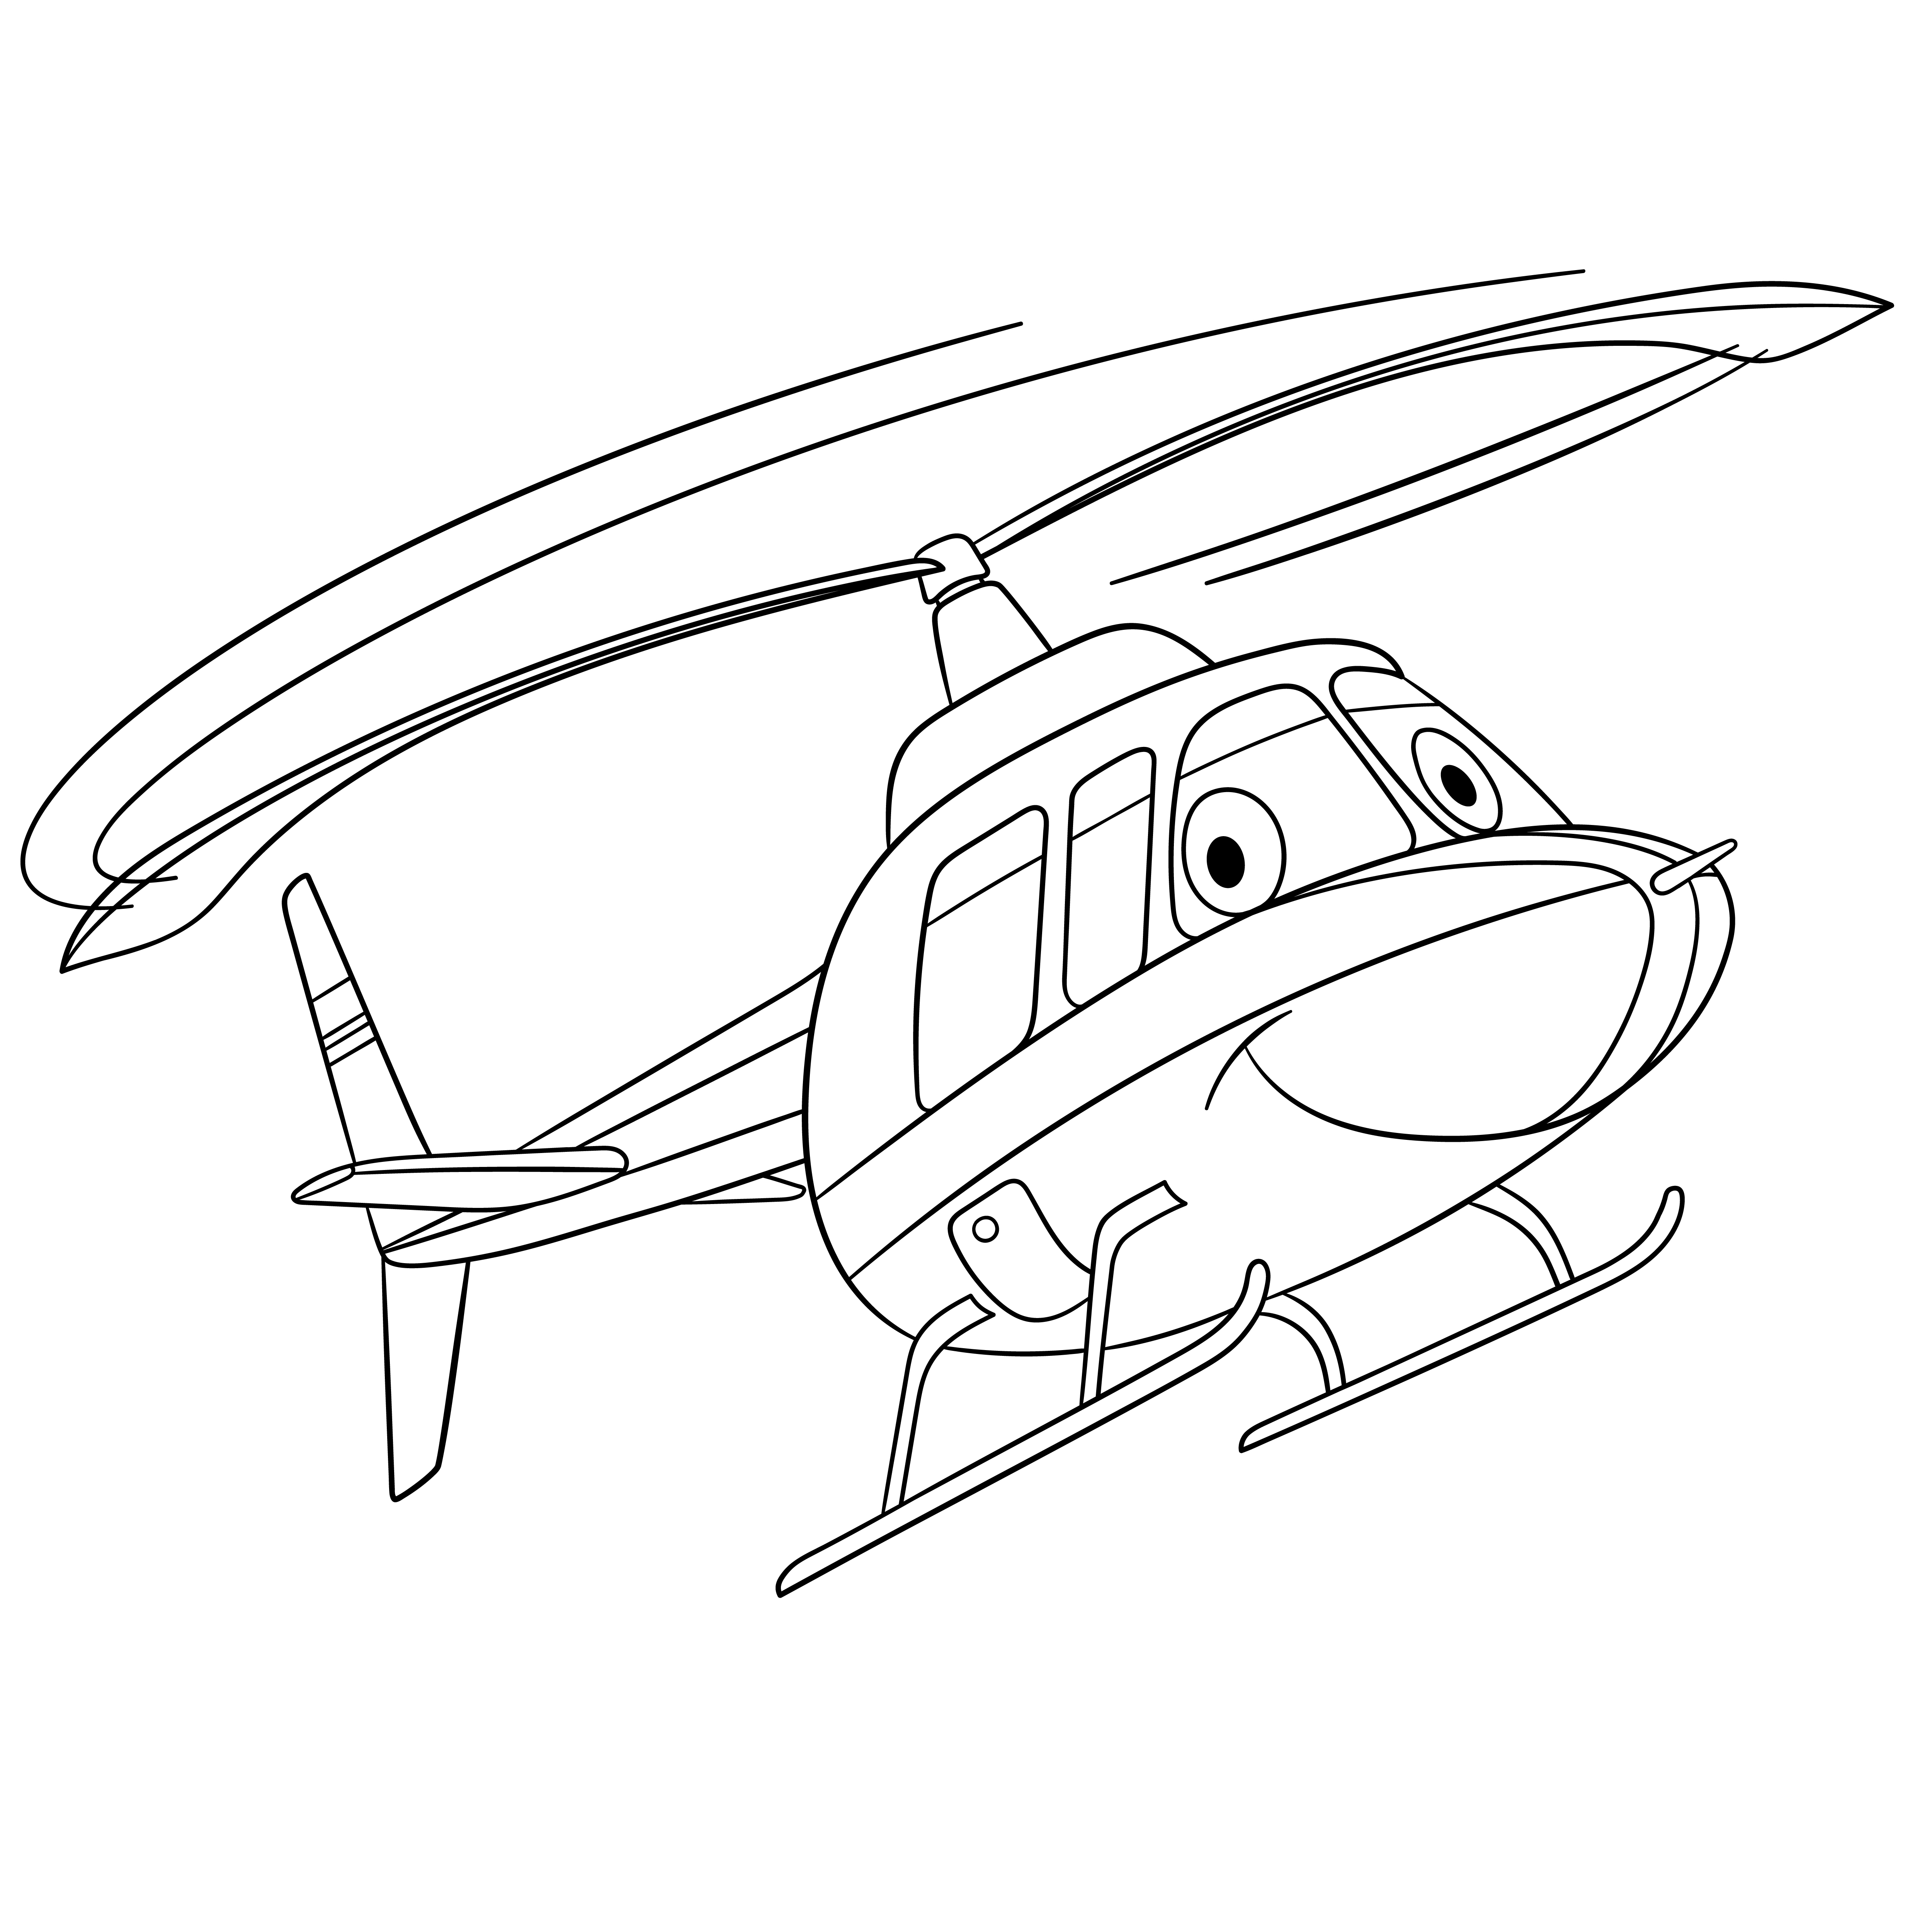 Раскраска вертолет с глазами на взлете формата А4 в высоком качестве